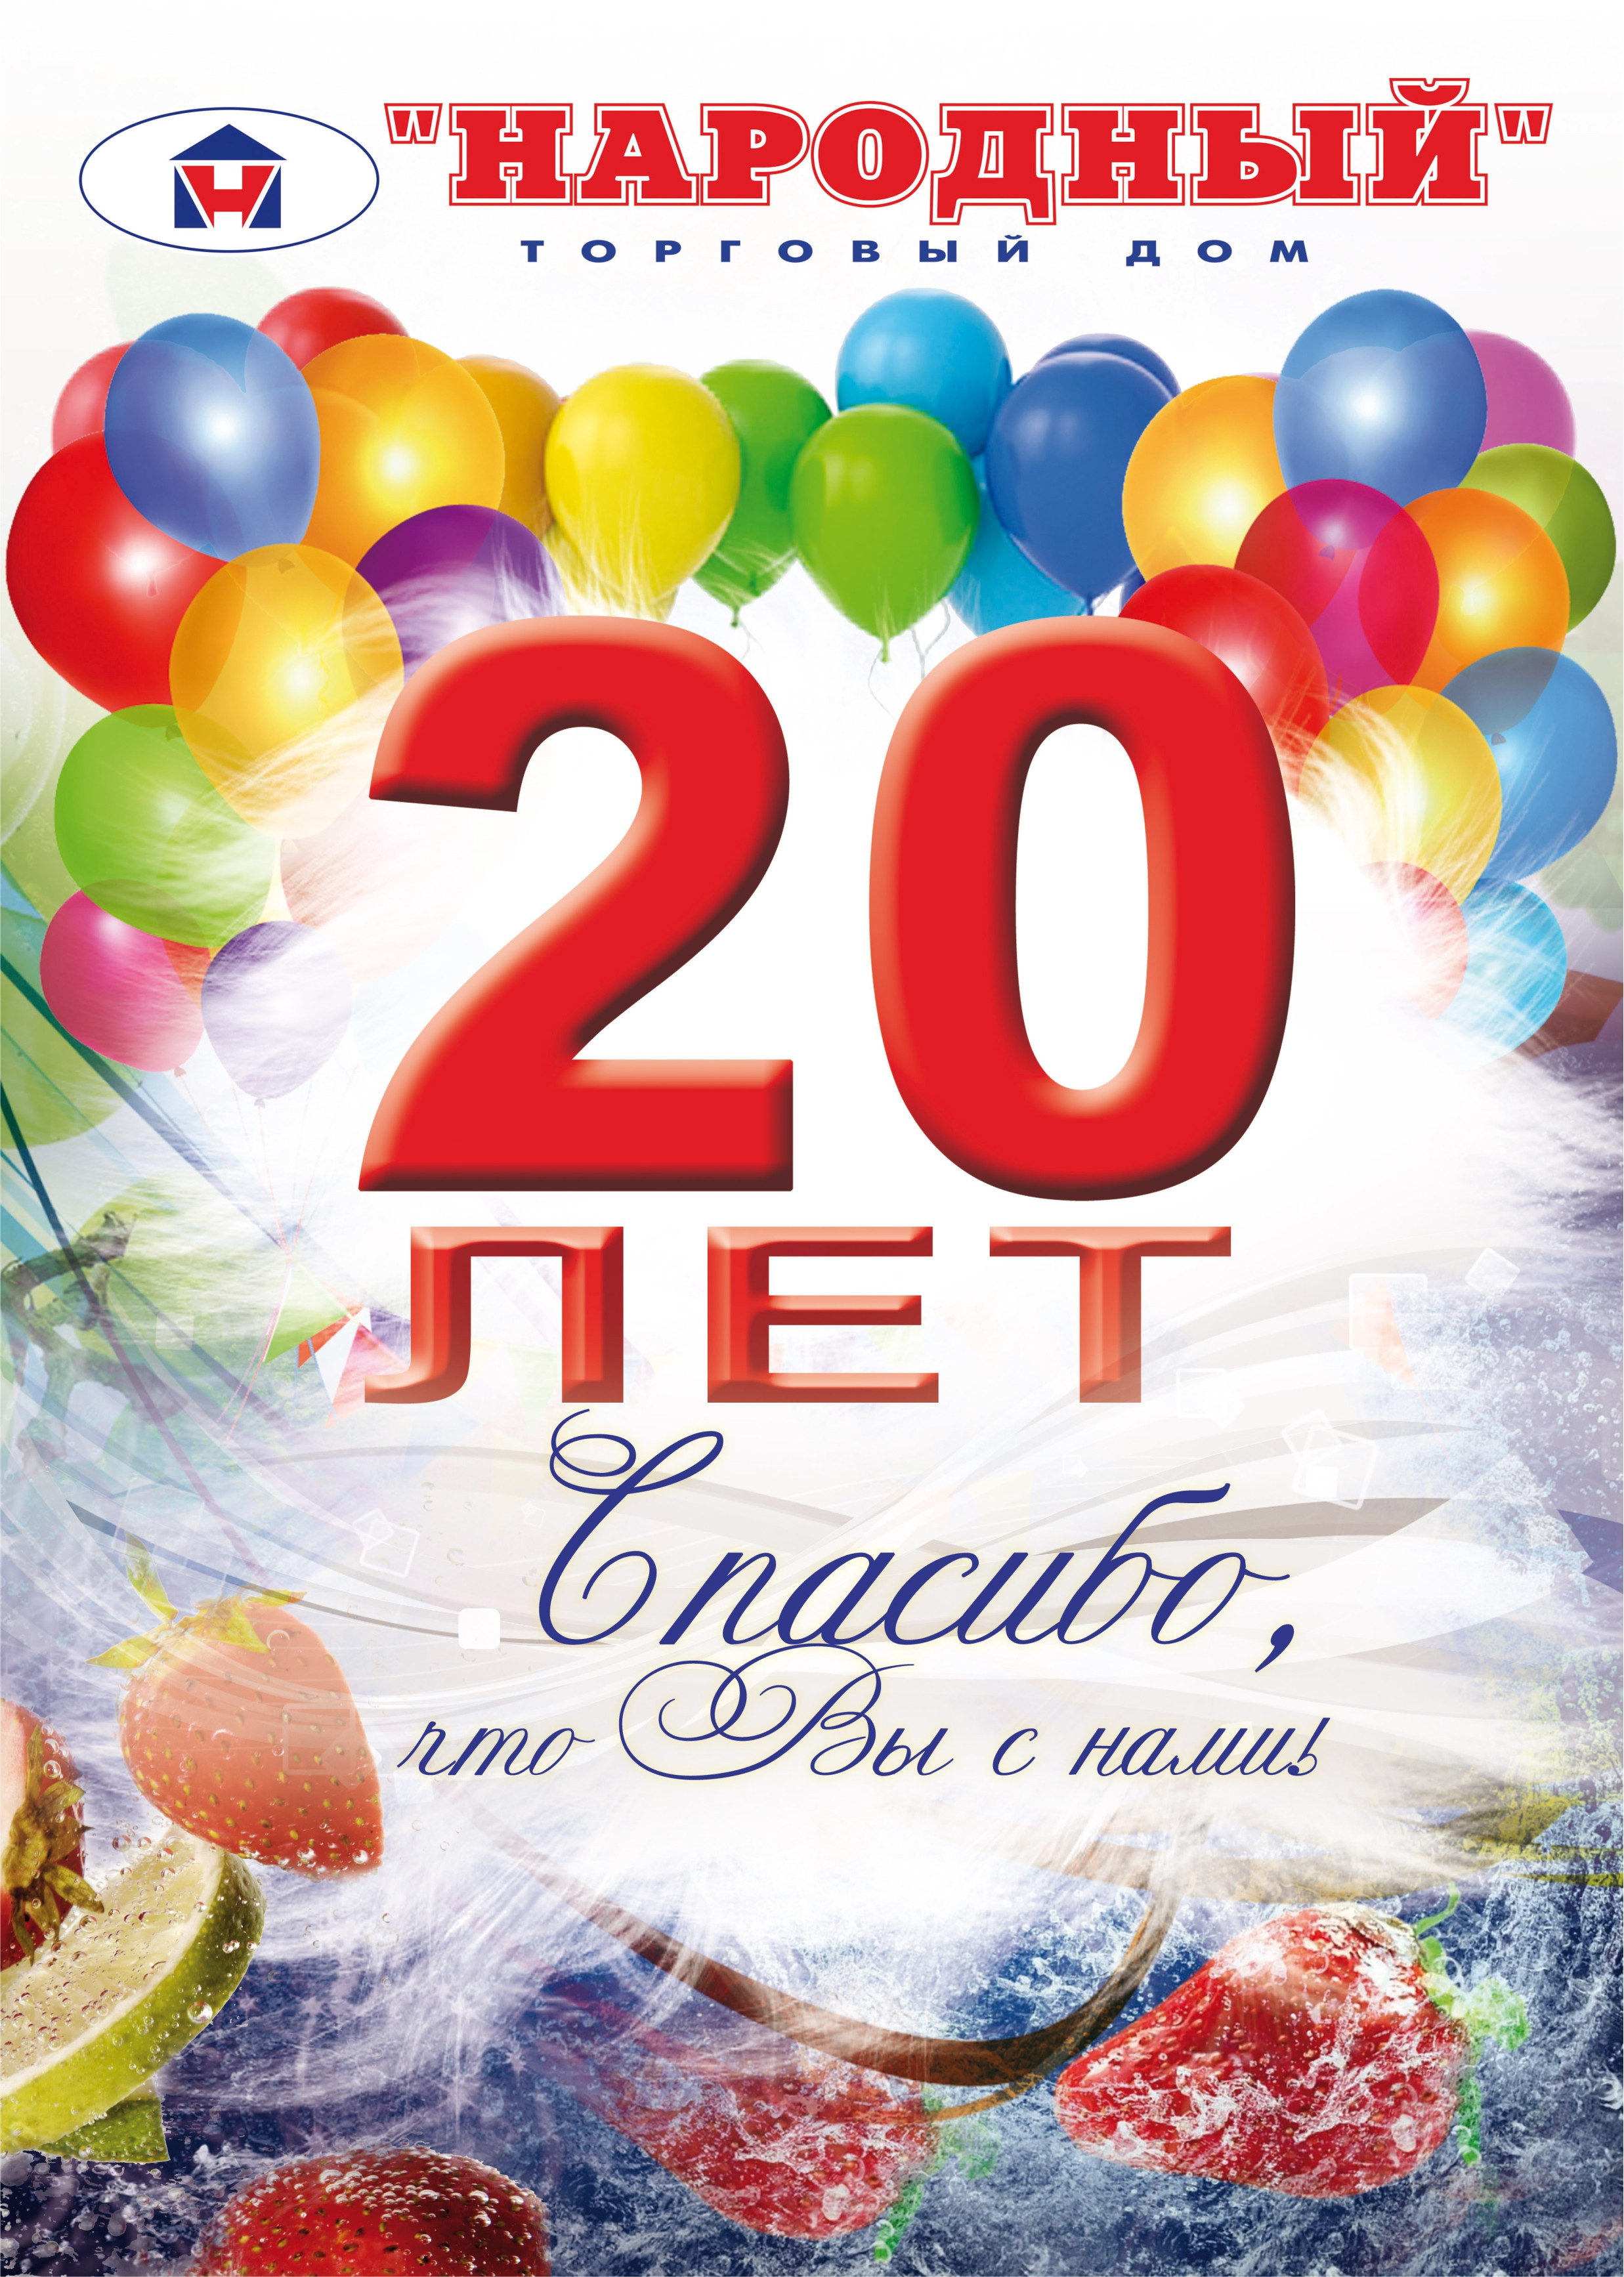 Поздравления с юбилеем компании 20-лет (предприятия, фирмы, организации)